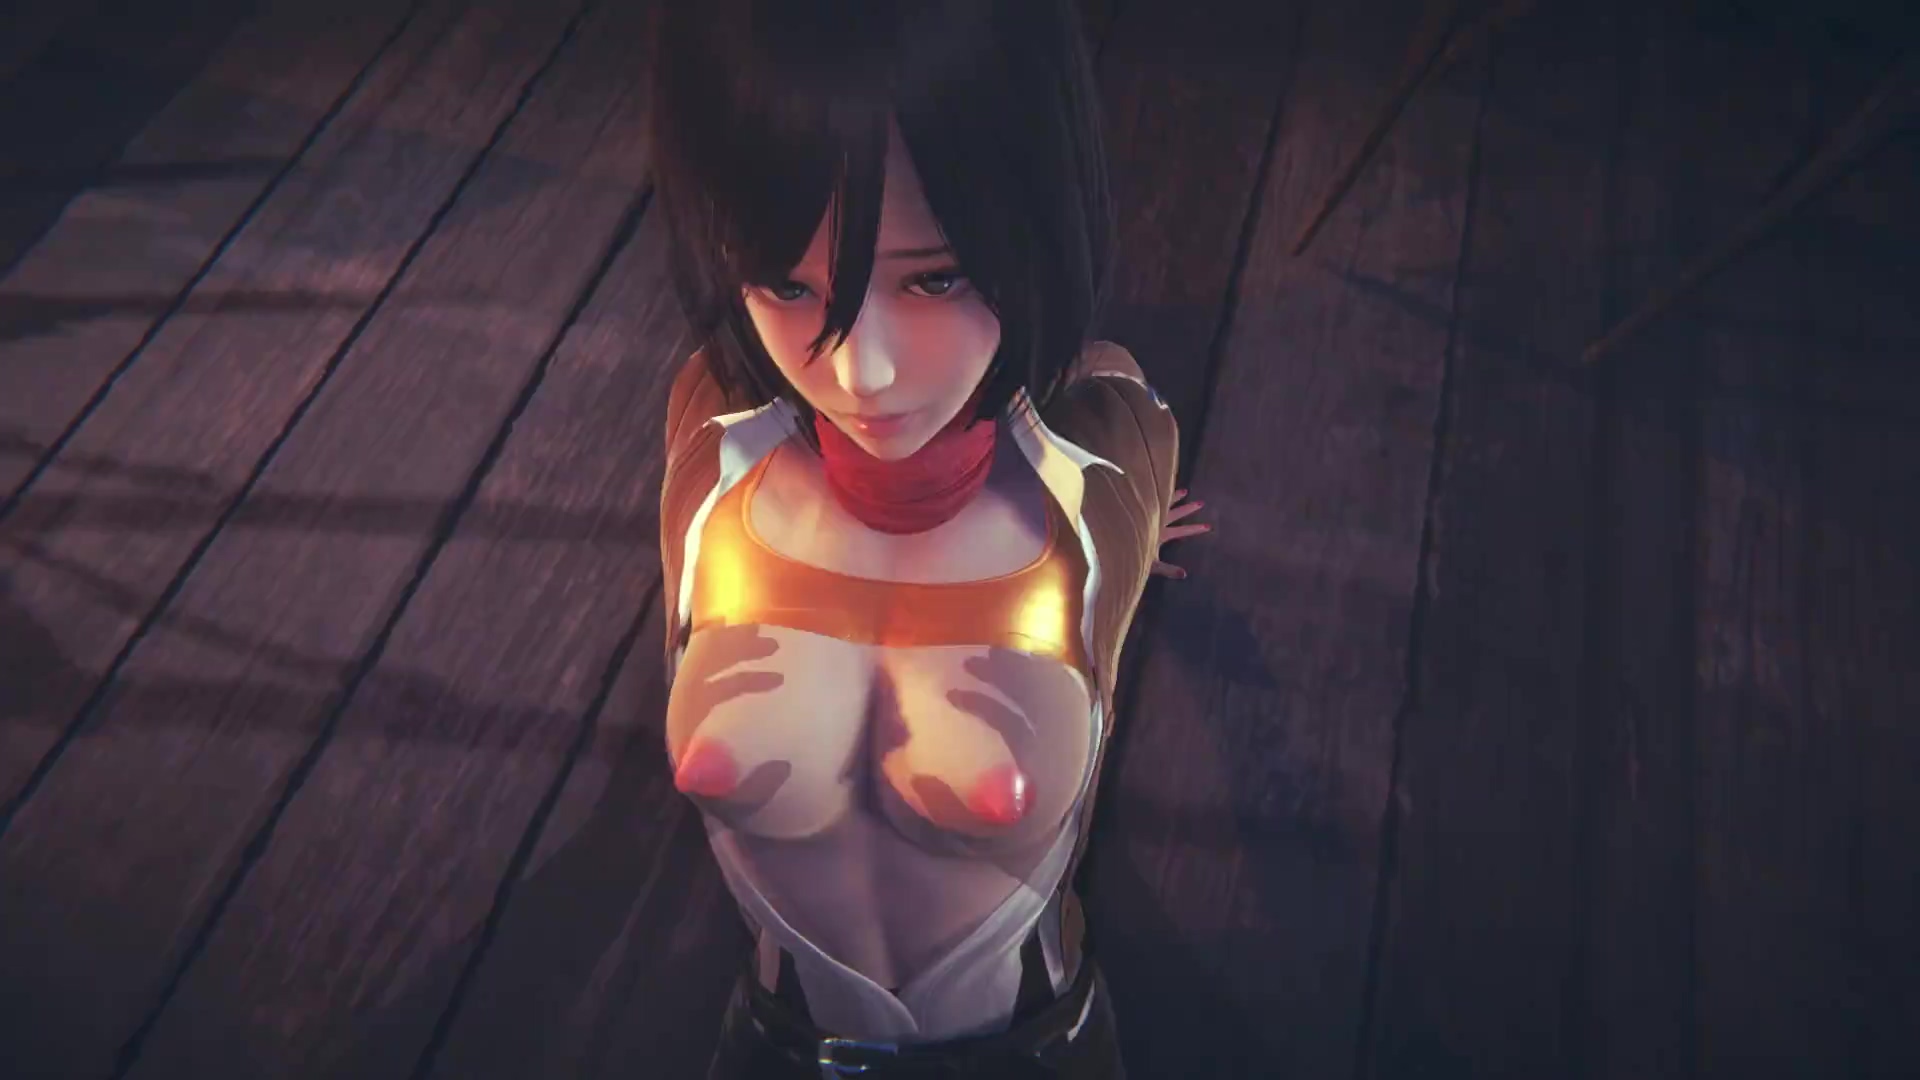 Attack on Titan] Busty teen Mikasa fucks hard in POV cartoon scene